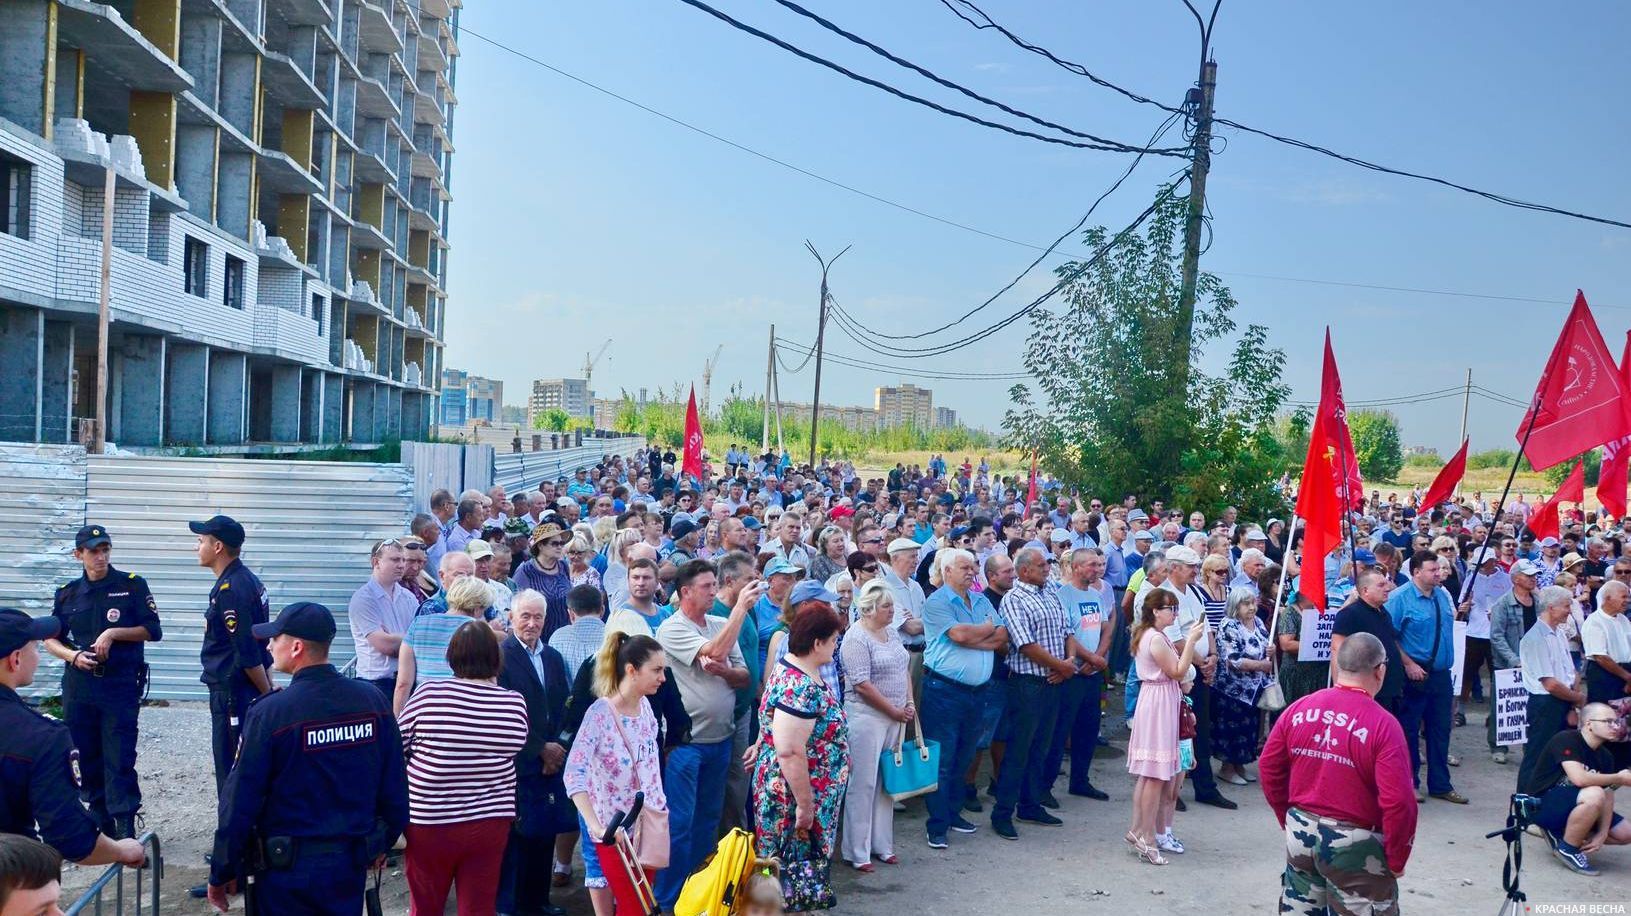 Брянск. Митинг против пенсионной реформы 2 сентября 2018 года